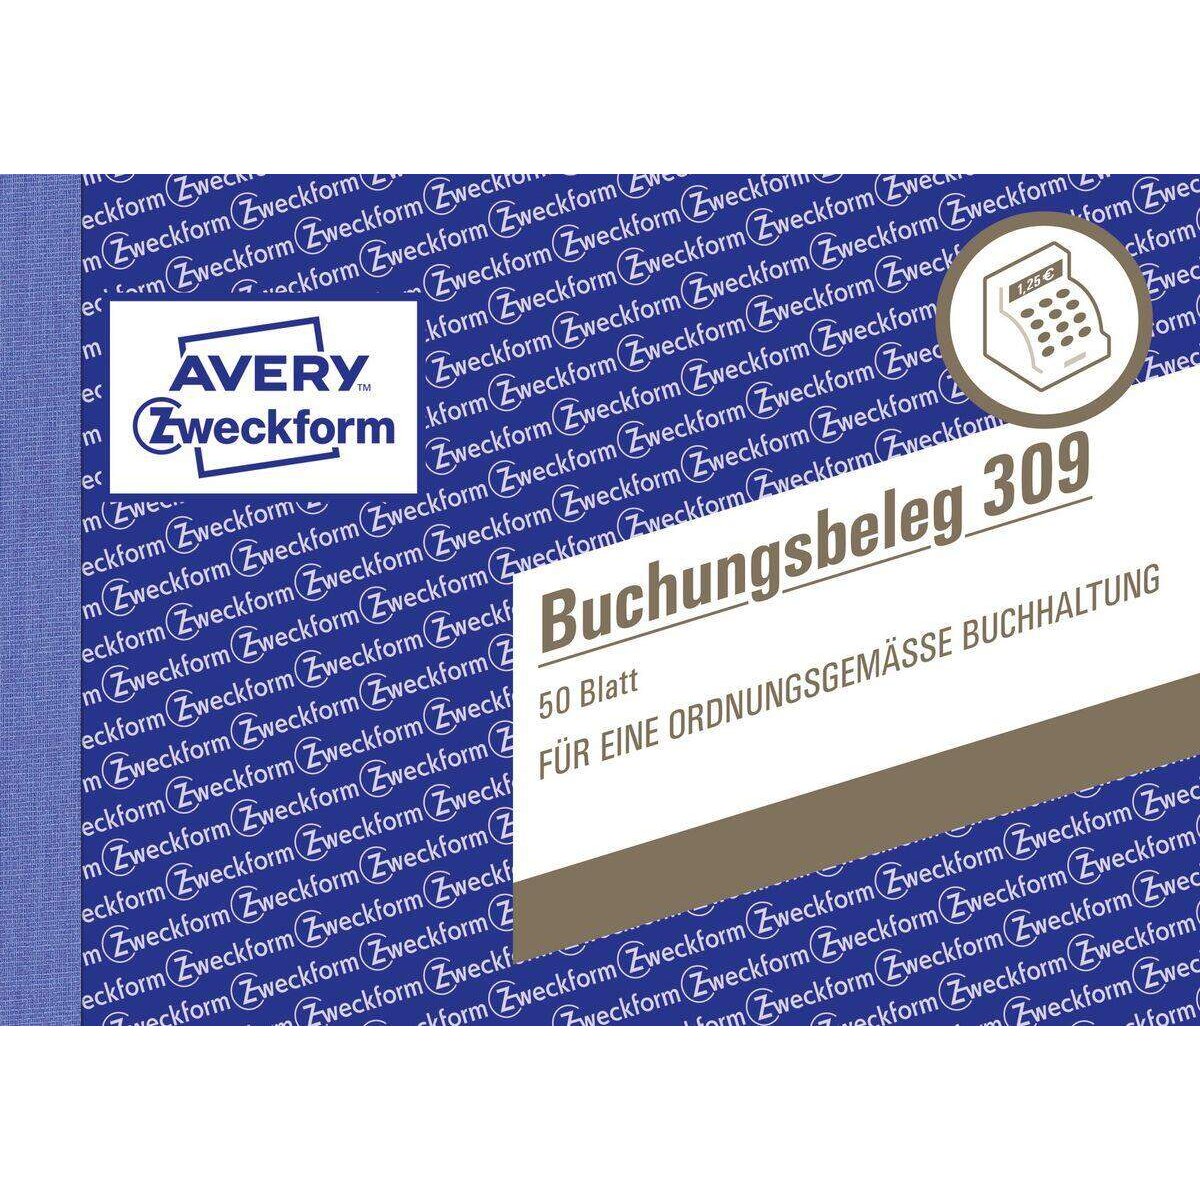 Avery Zweckform 309 Buchungsbeleg, A6 quer, 50 Originale, 50 Blatt